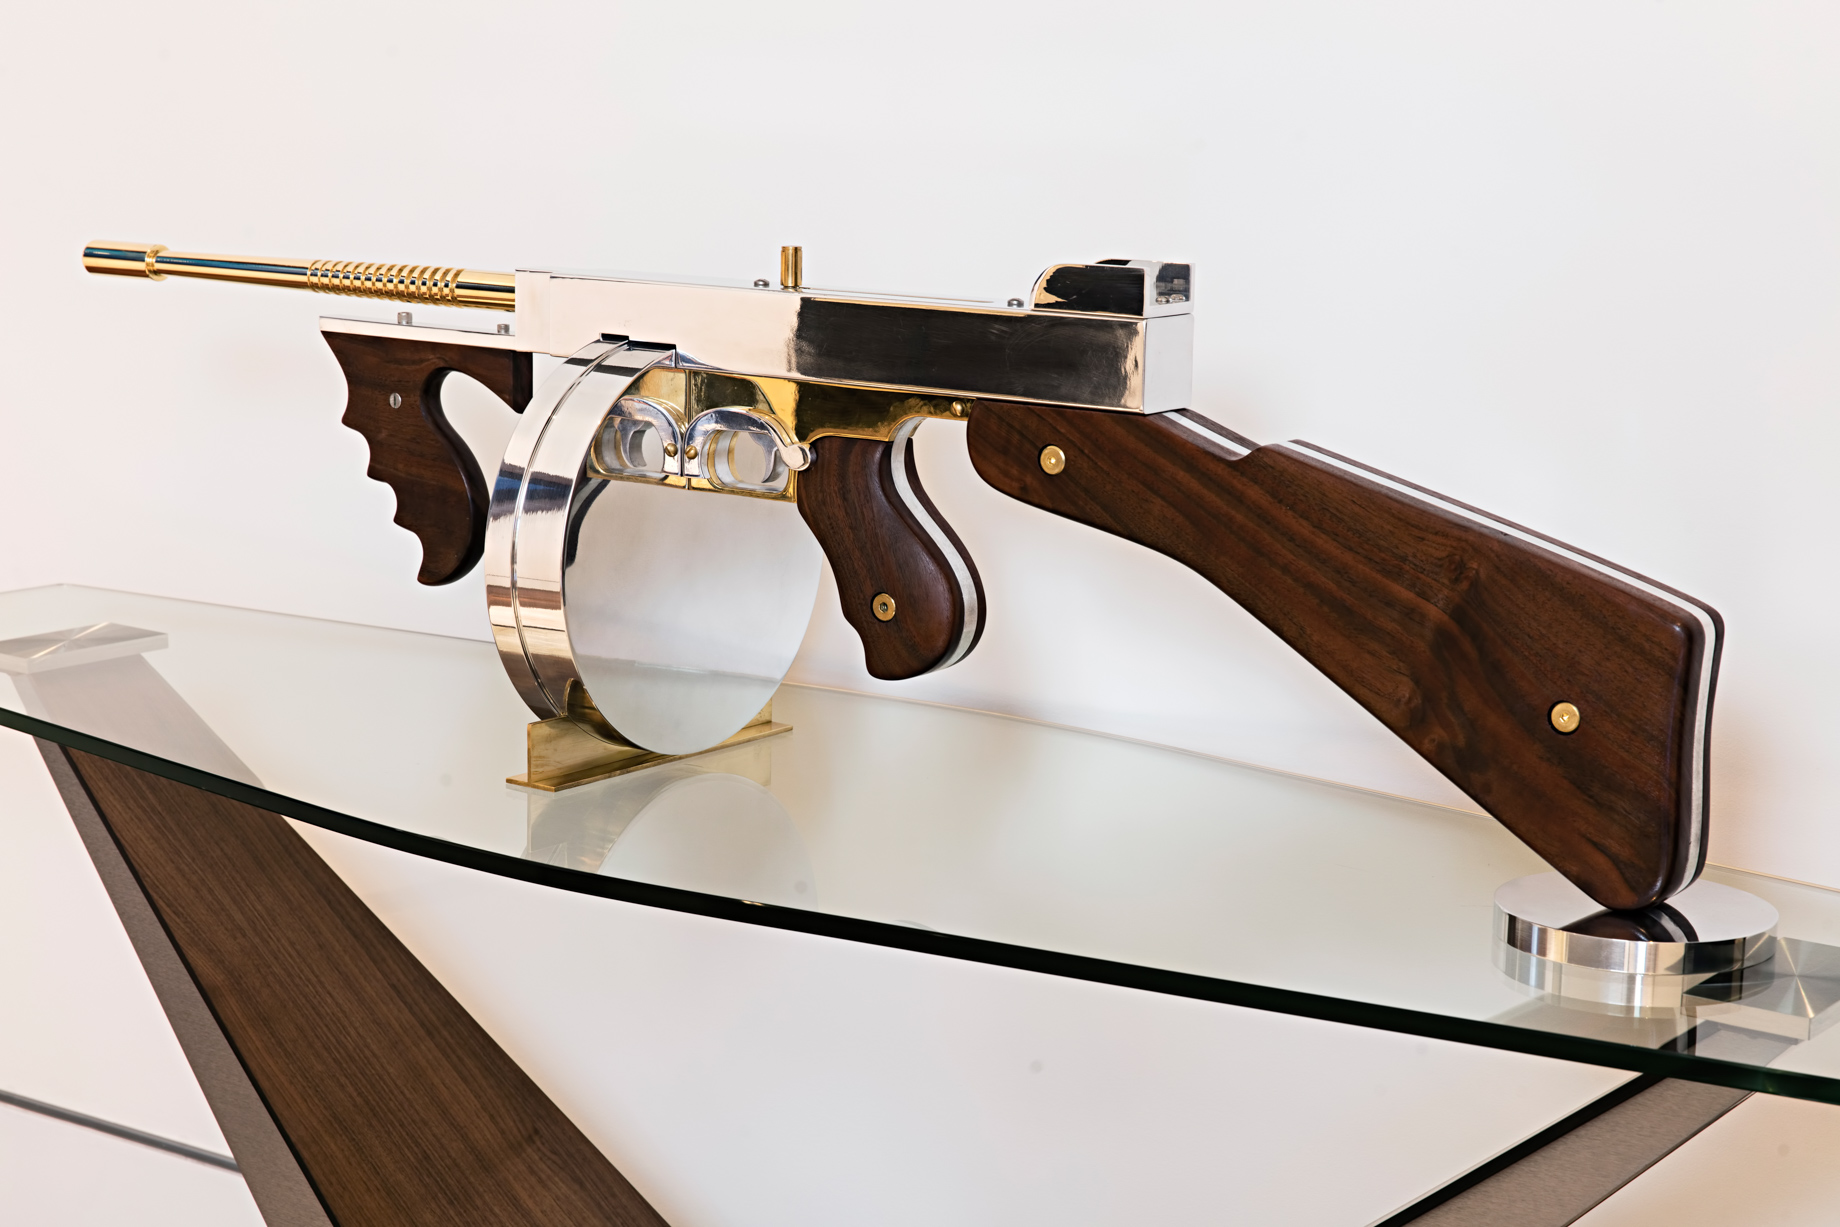 Gale Hart Chrome Gun Sculpture - 924 Bel Air Rd, Los Angeles, CA, USA